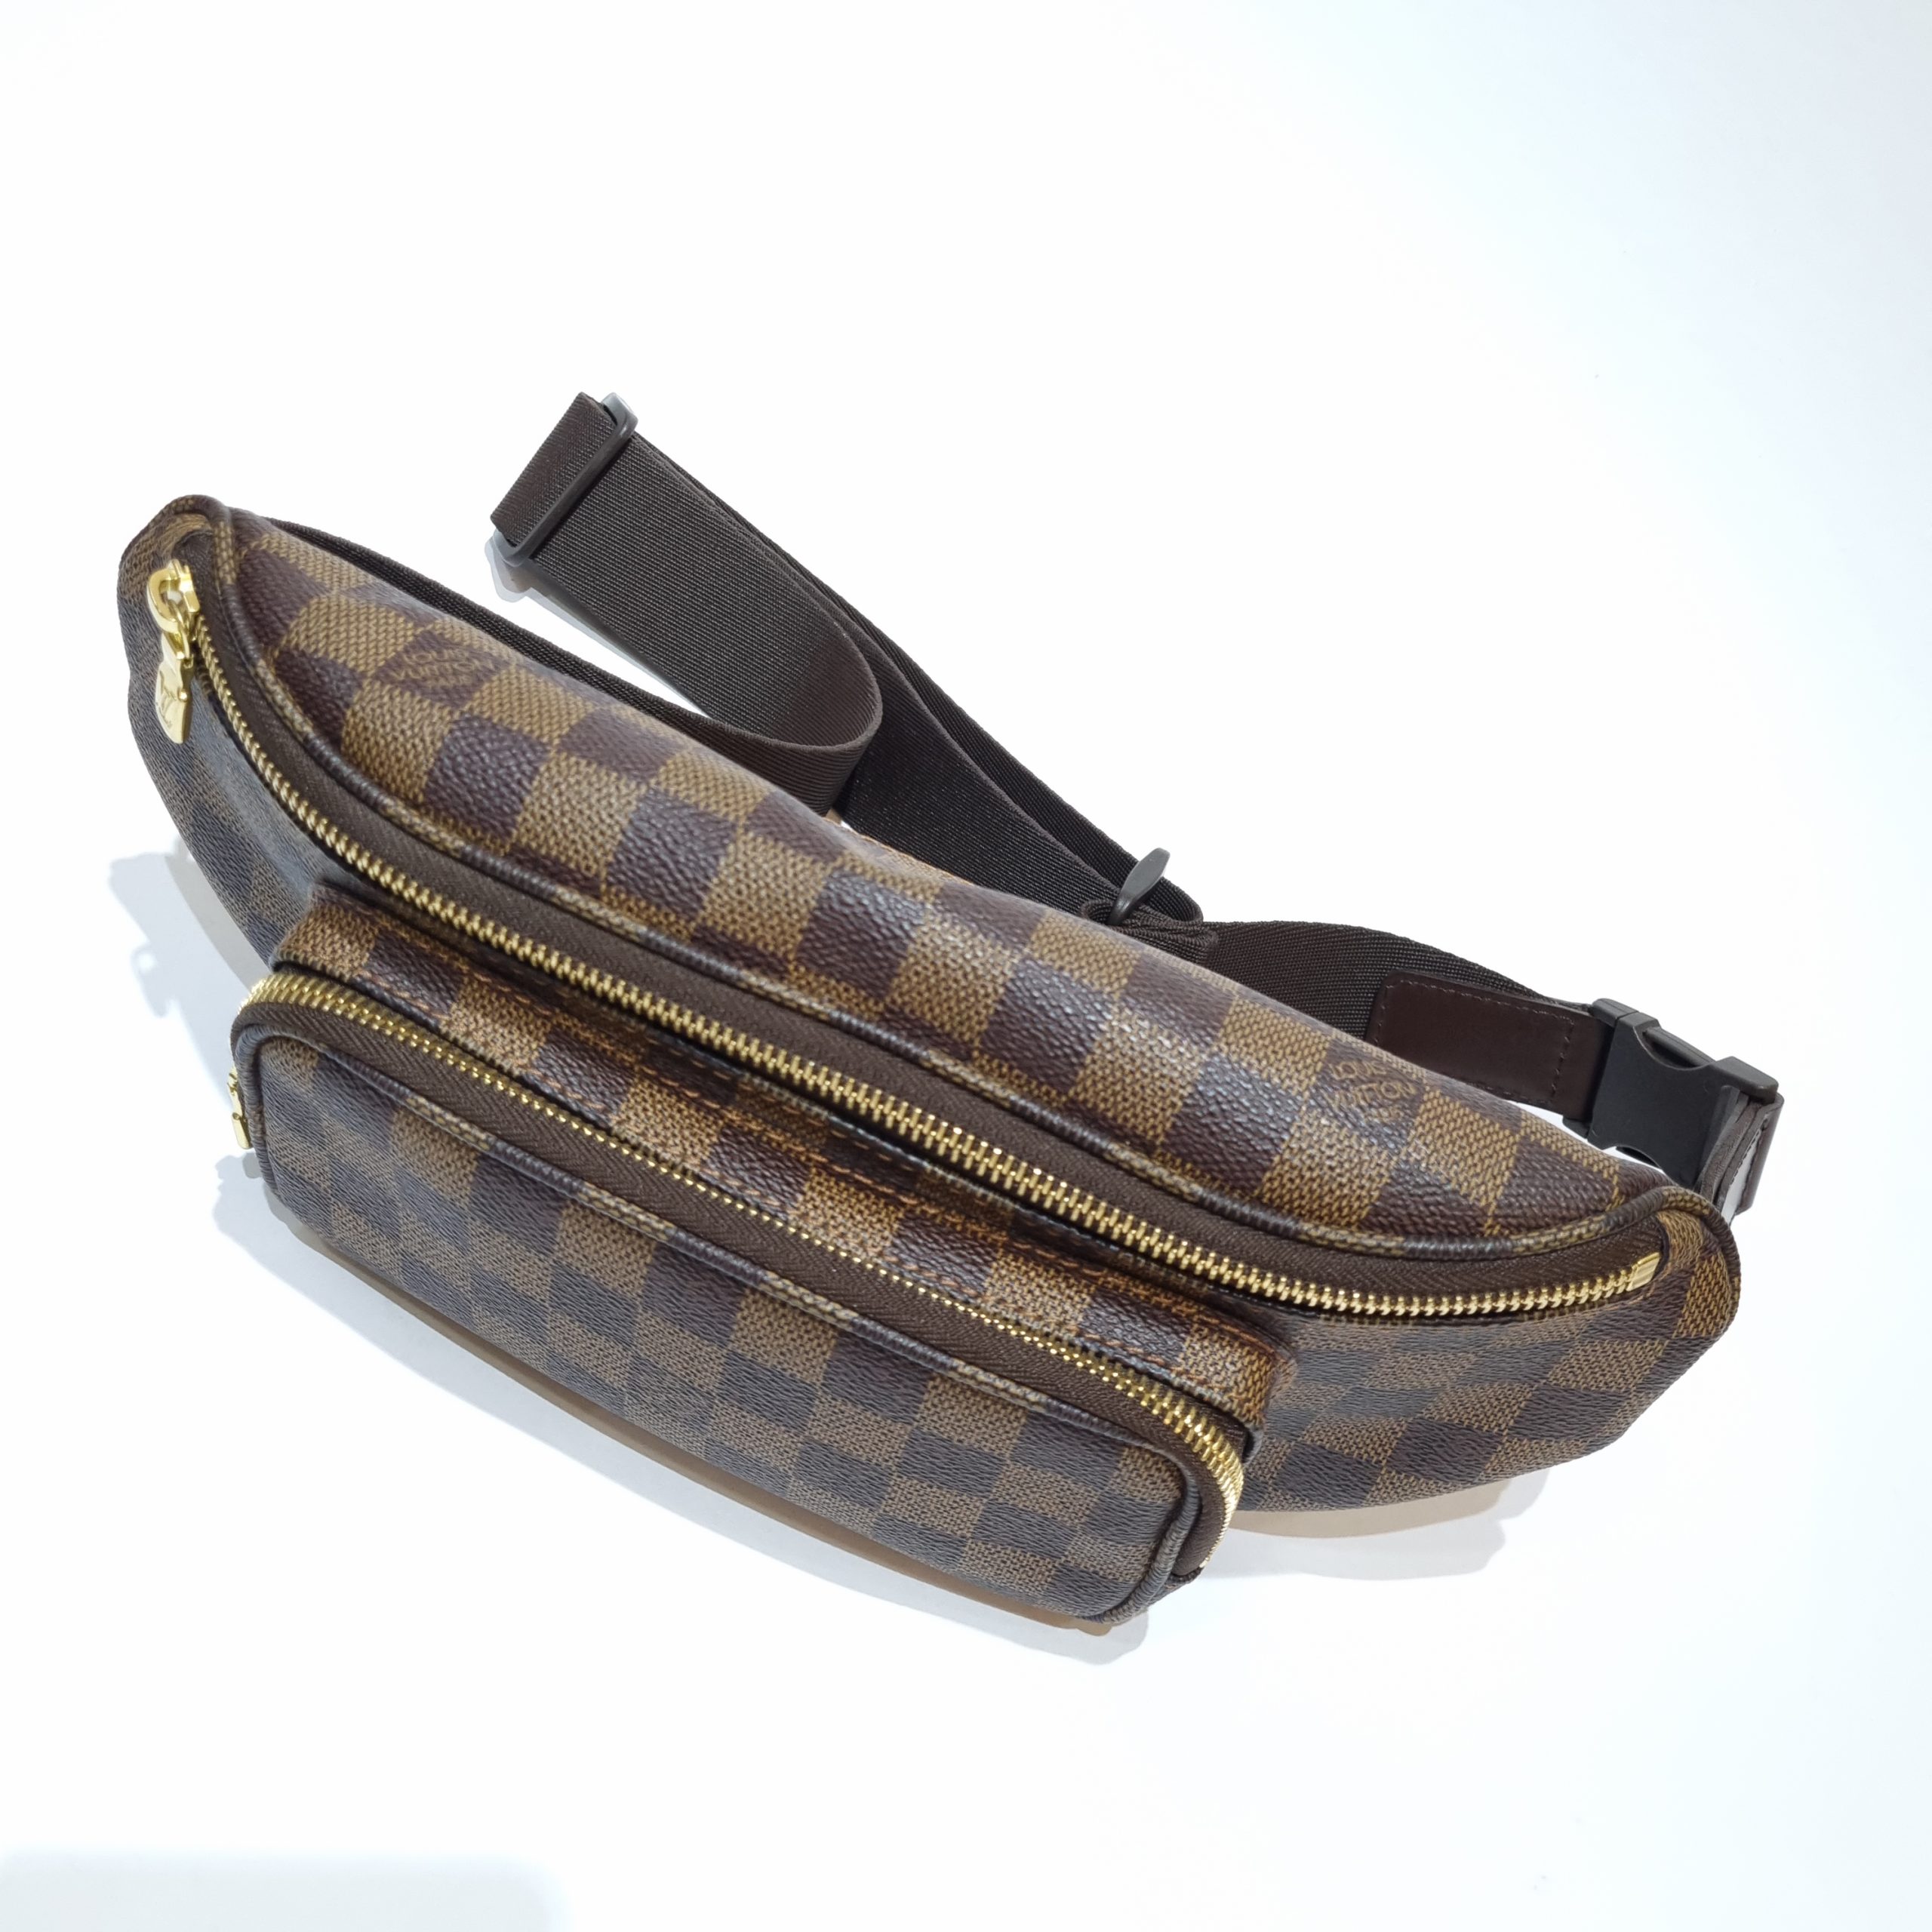 Louis Vuitton Damier Ebene Melville Belt Bag - BrandConscious Authentics